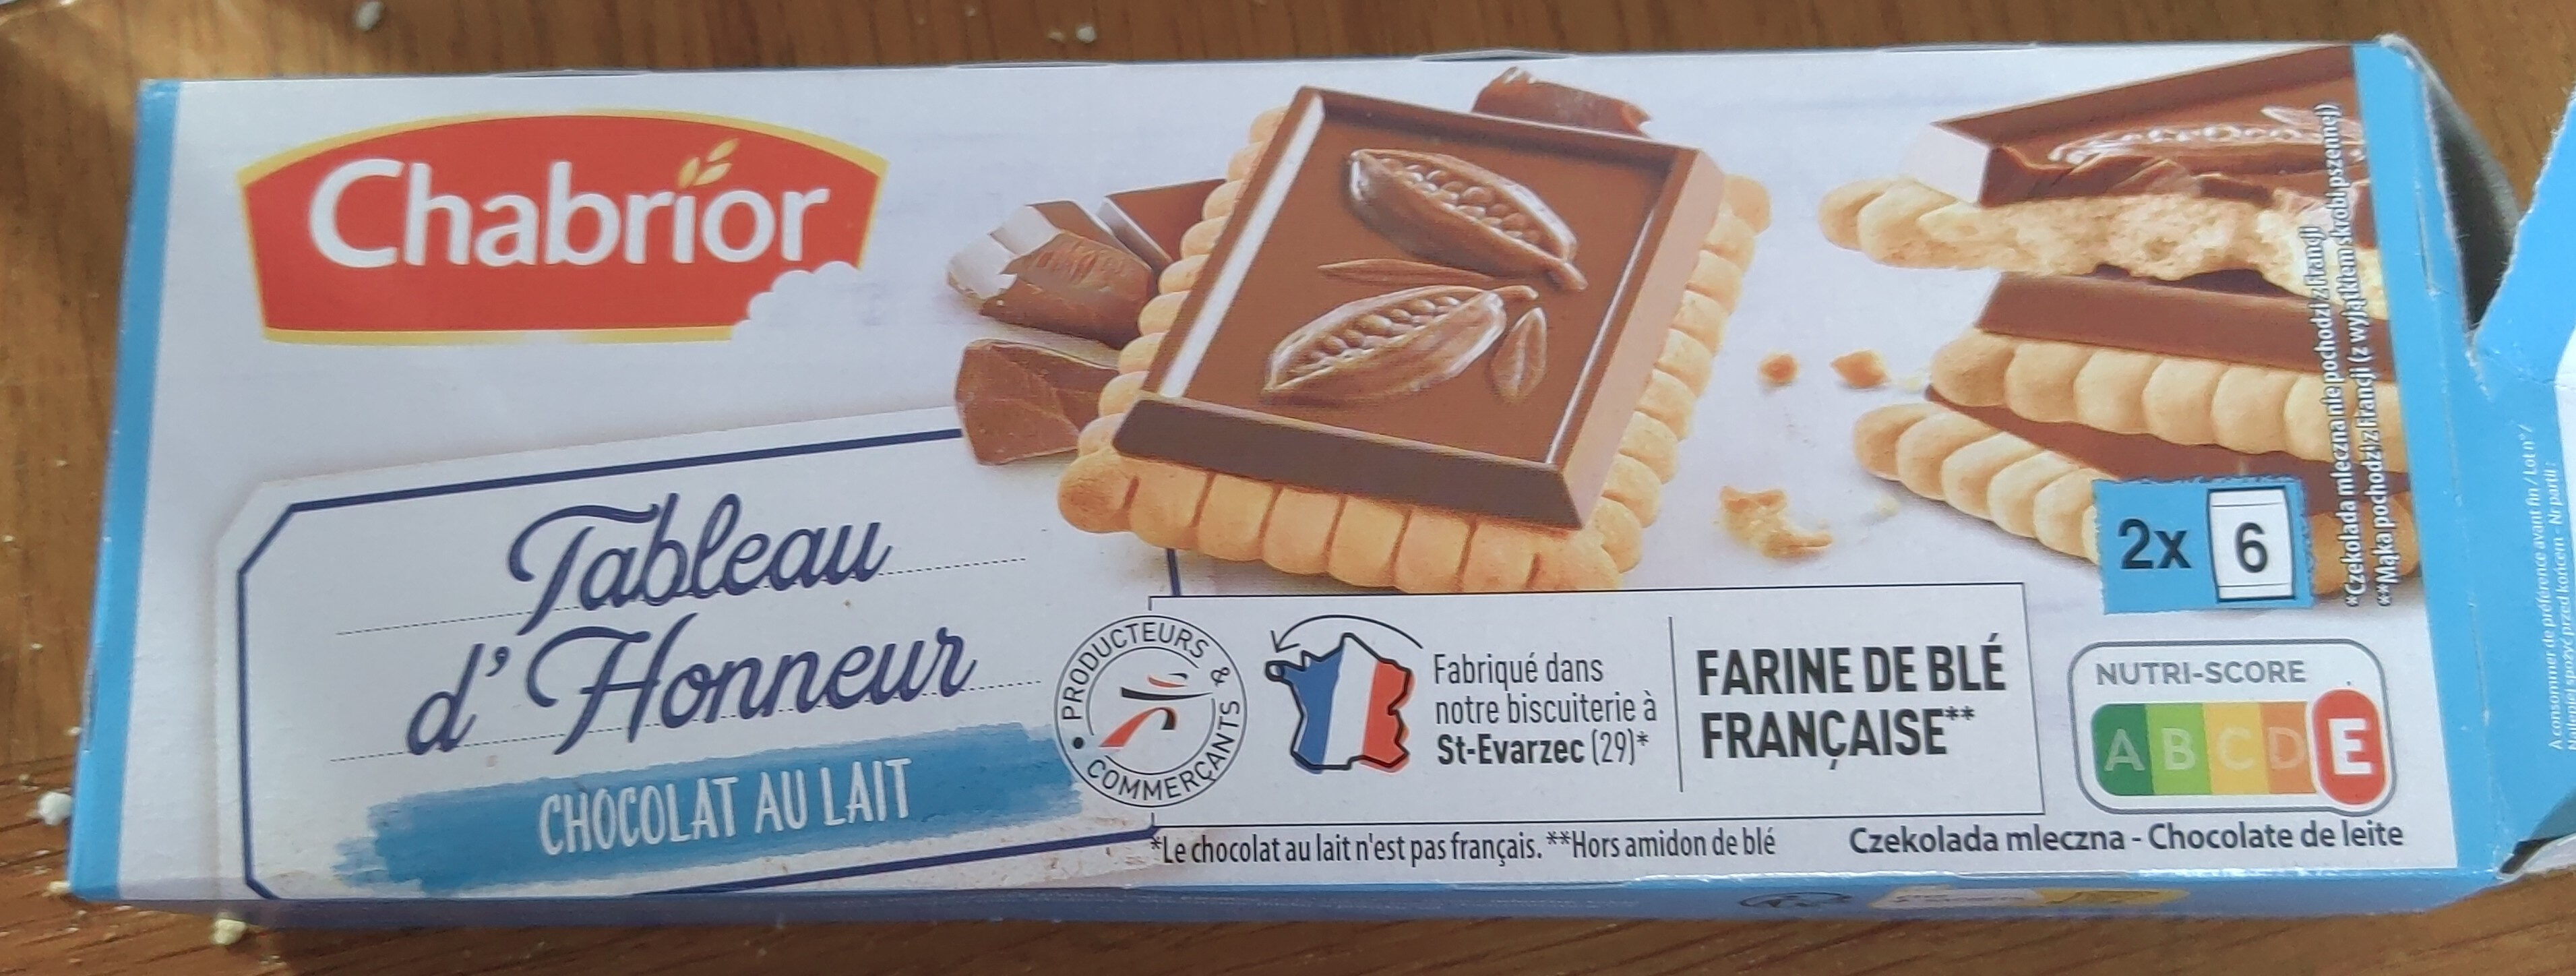 Biscuits tableau d'honneur chocolat au lait - Produit